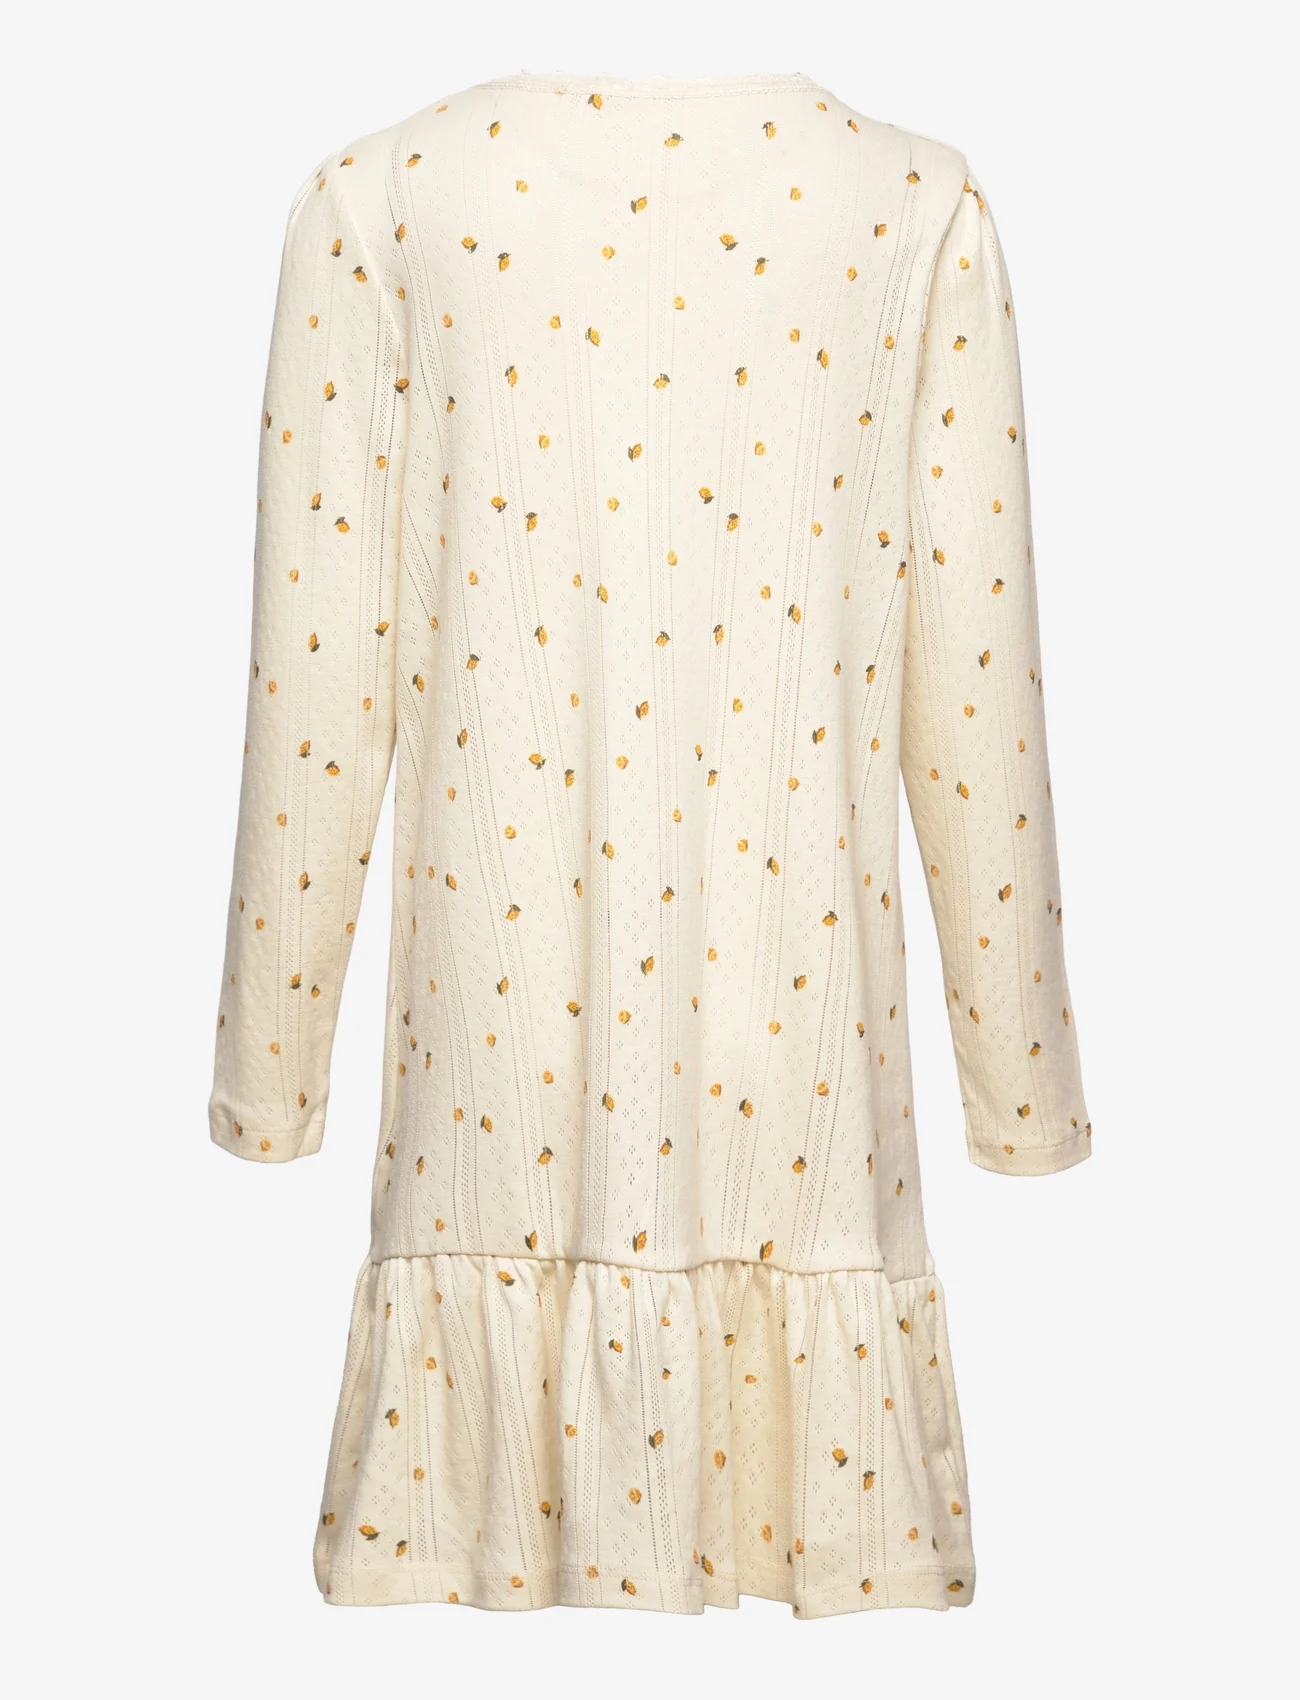 Noa Noa miniature - Dress long sleeve - pitkähihaiset - print lemon - 1